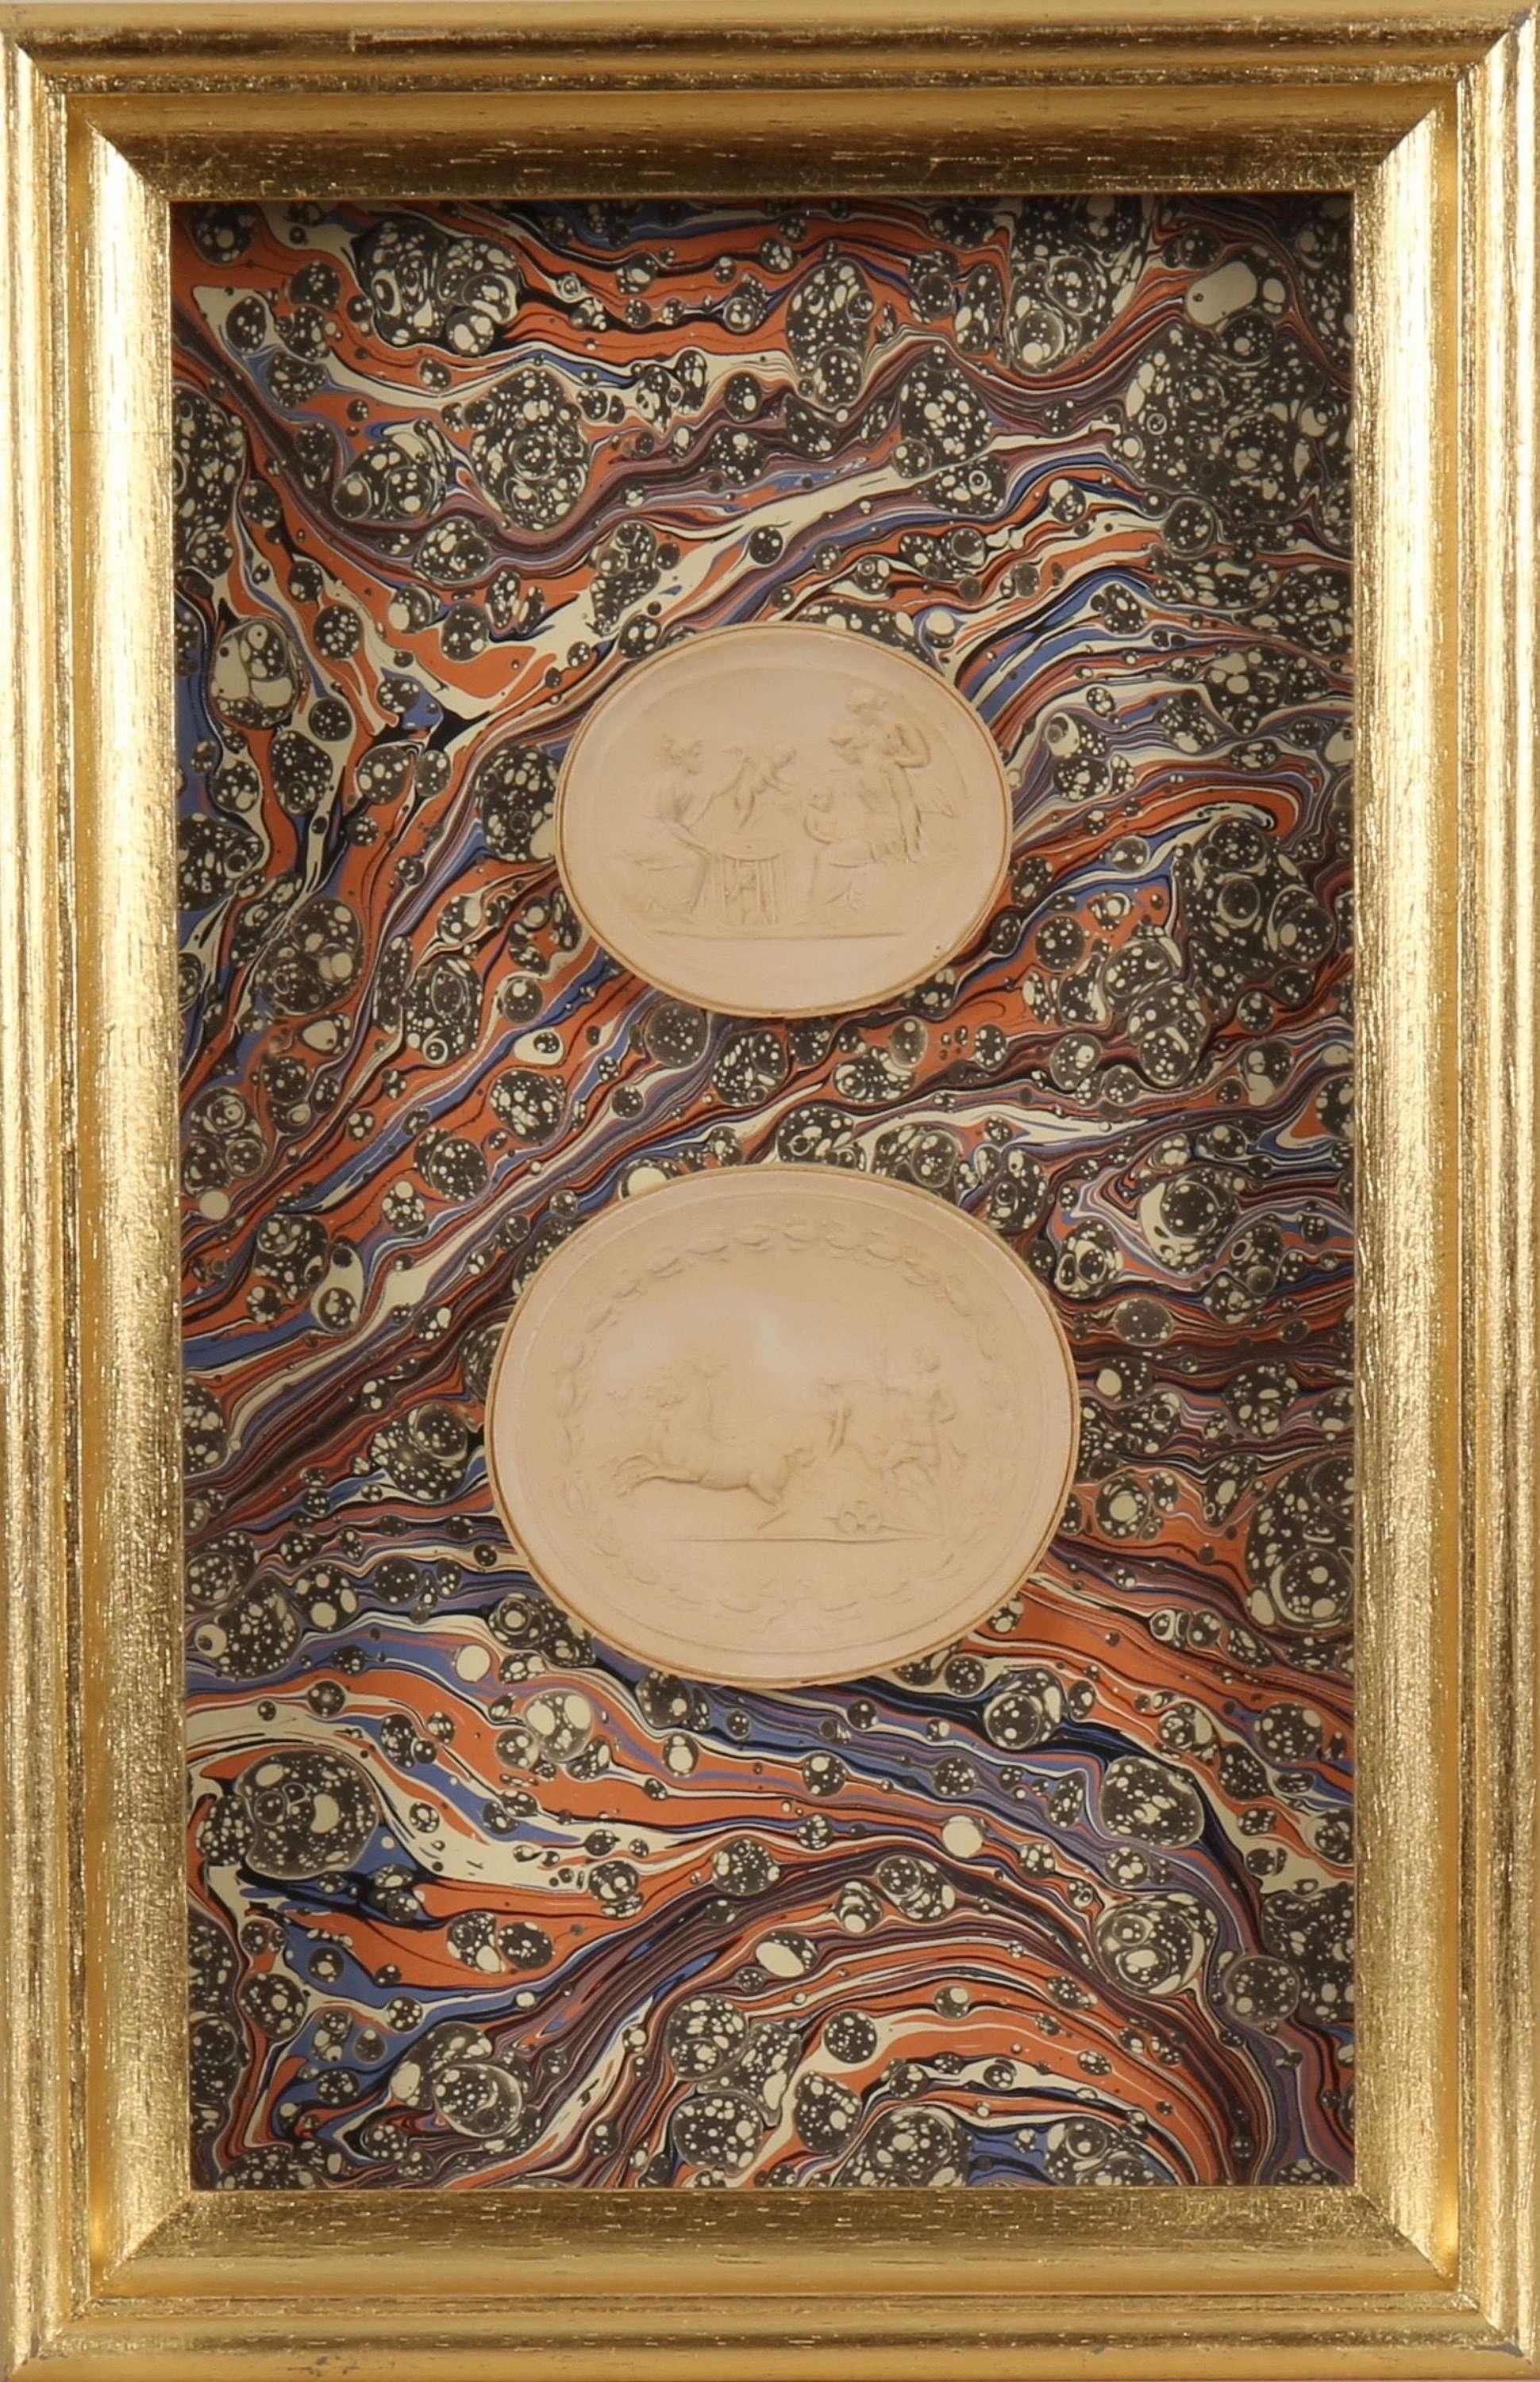 Paoletti Impronte, ‘Mussei Diversi’ Framed Plaster Cameo Seal, Rome c1800 - Art by Bartolomeo Paoletti and Pietro Paoletti